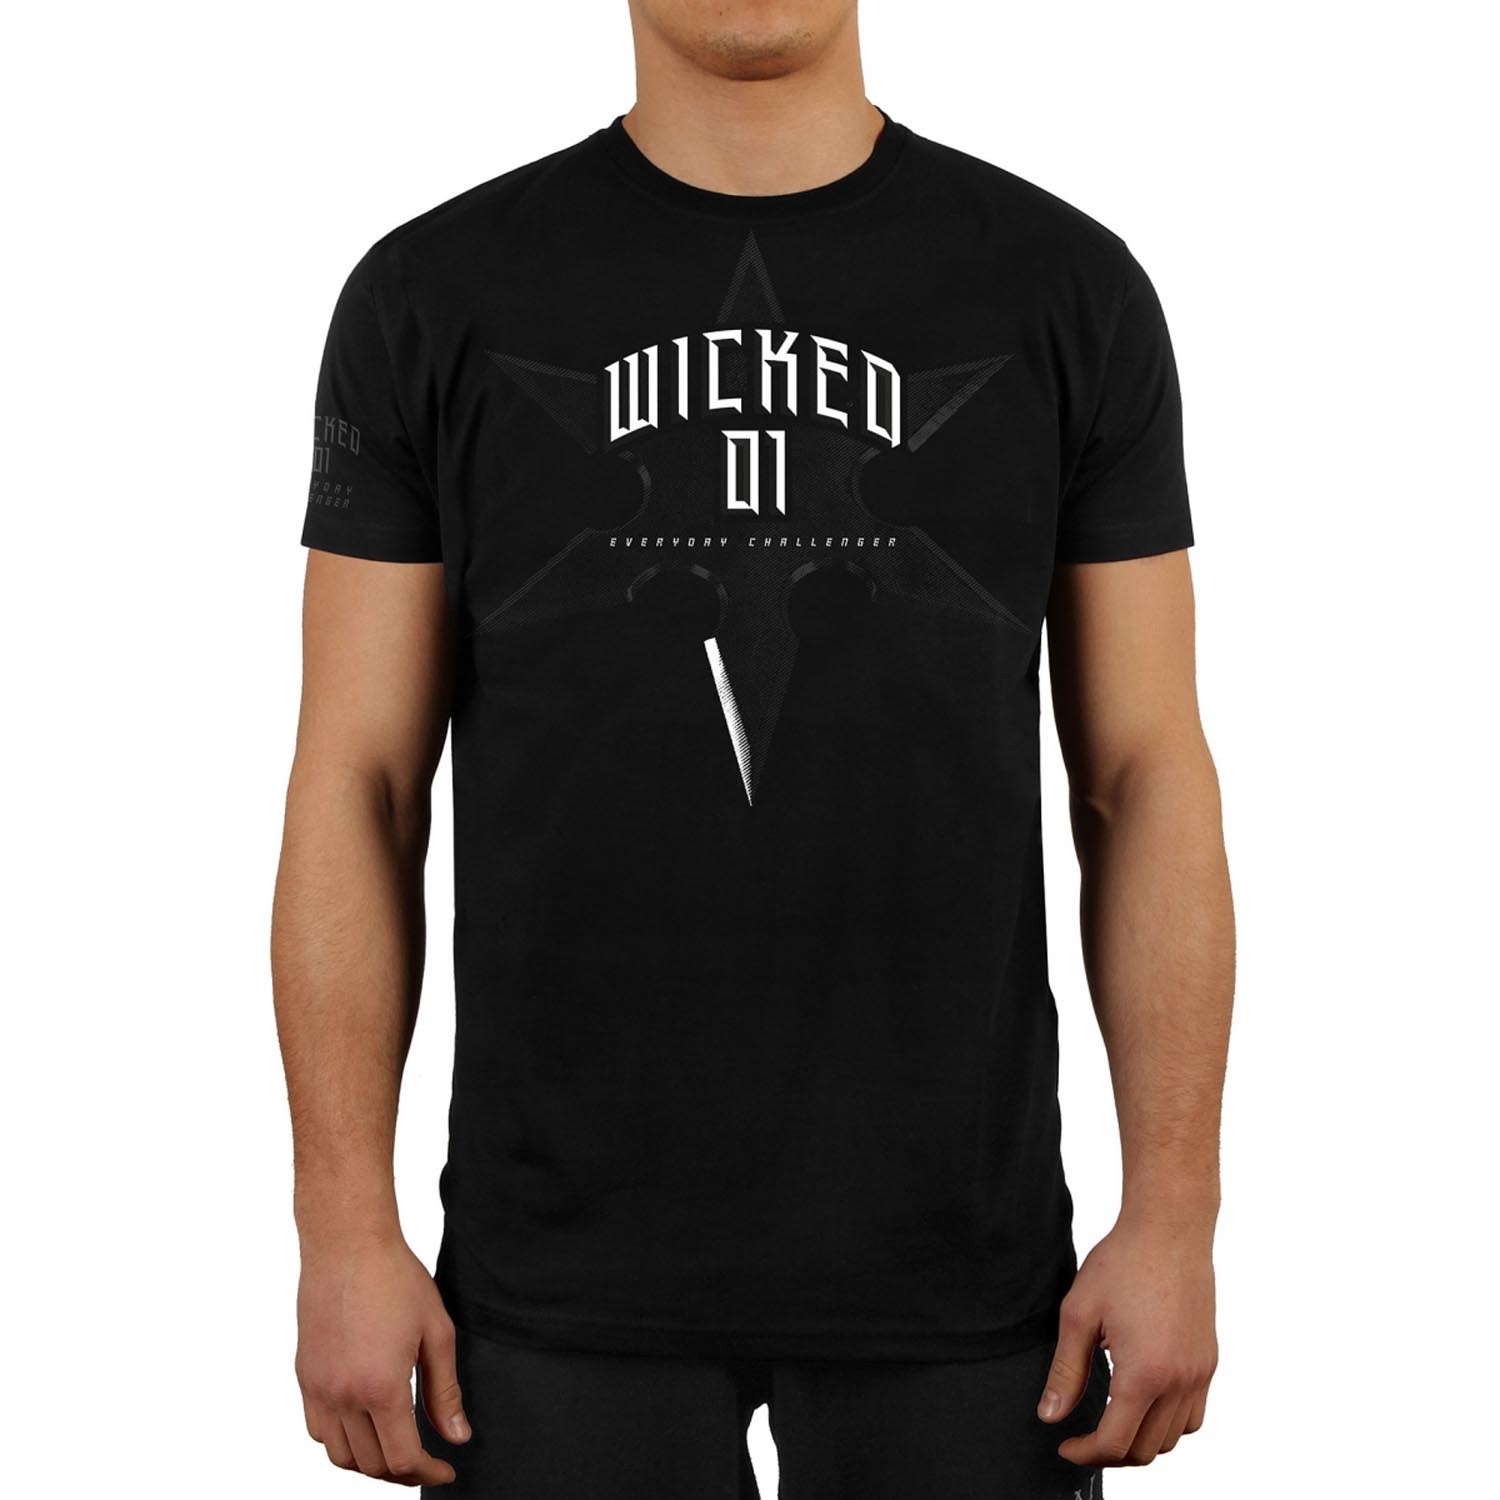 Wicked One T-Shirt, Shuriken, schwarz